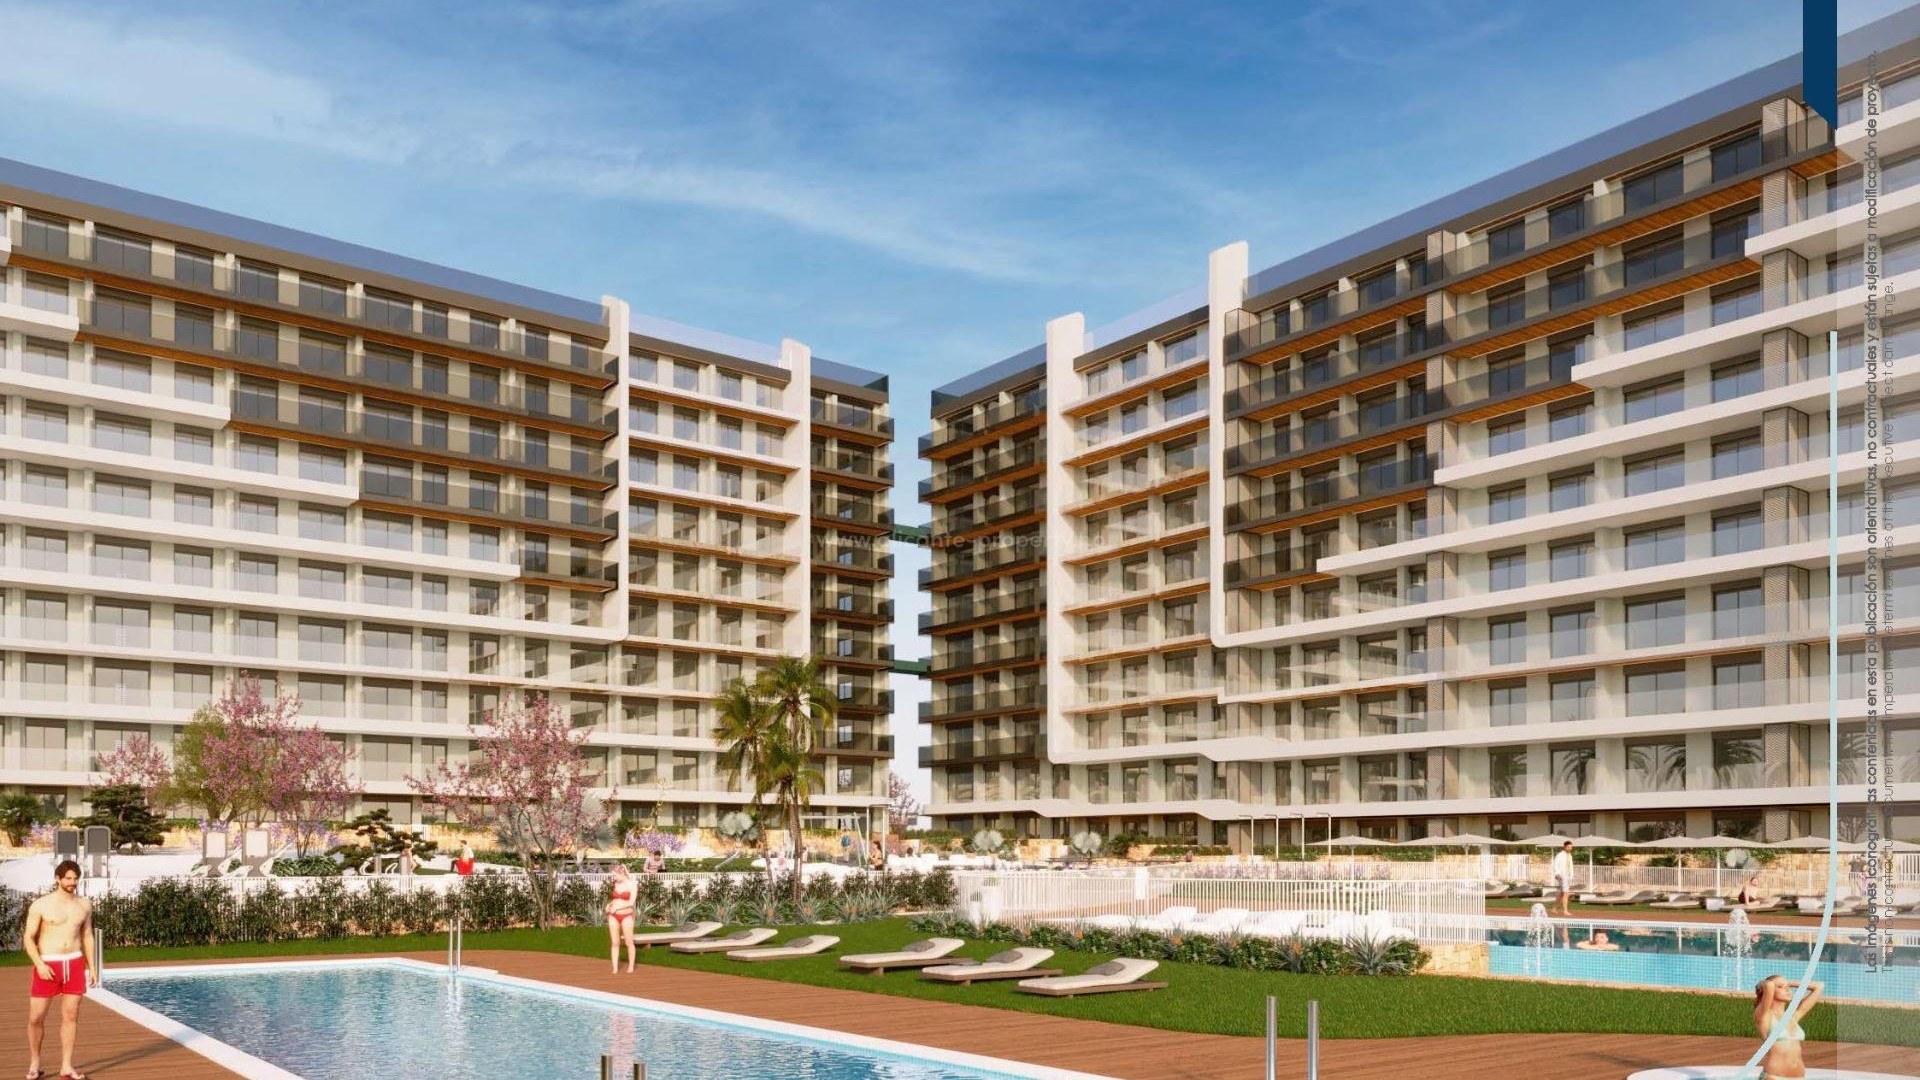 220 leiligheter med 2/3 soverom og 2 bad i Punta Prima, store terrasser, første etasje med hage og toppleiligheter med solarium, felles svømmebasseng